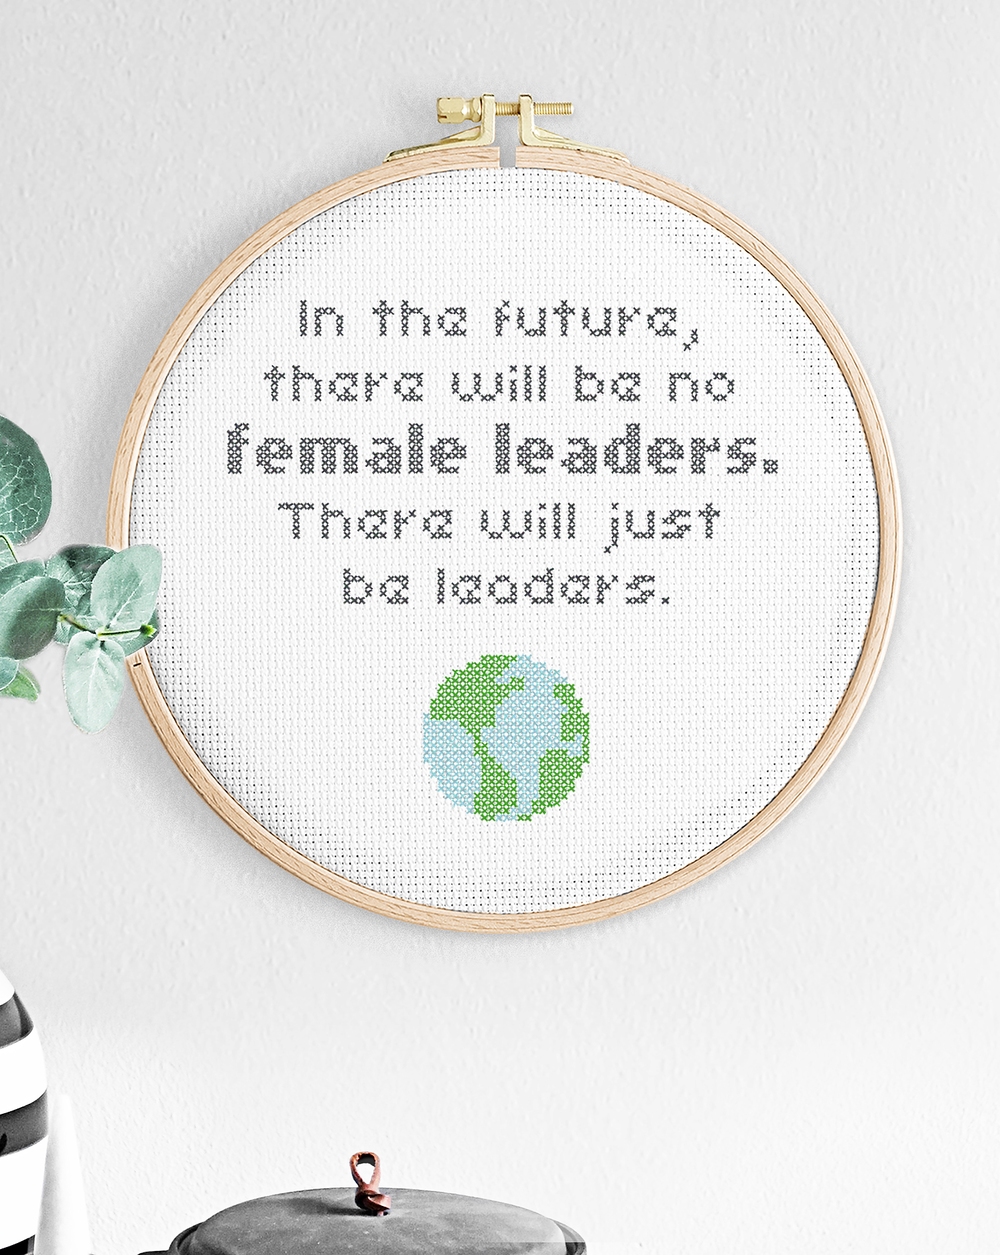 Female leaders